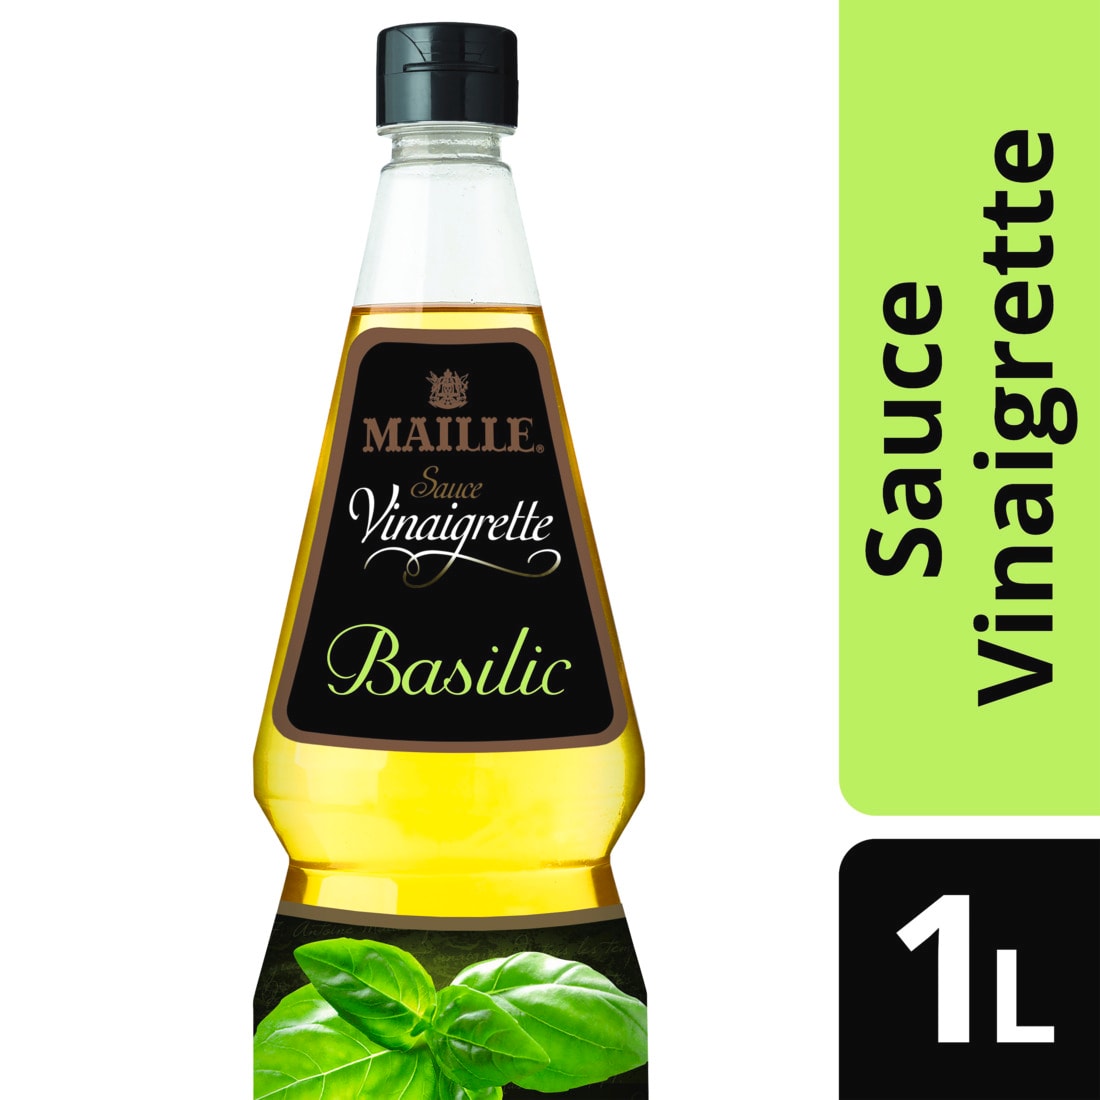 Maille Sauce Vinaigrette Basilic 1L - 